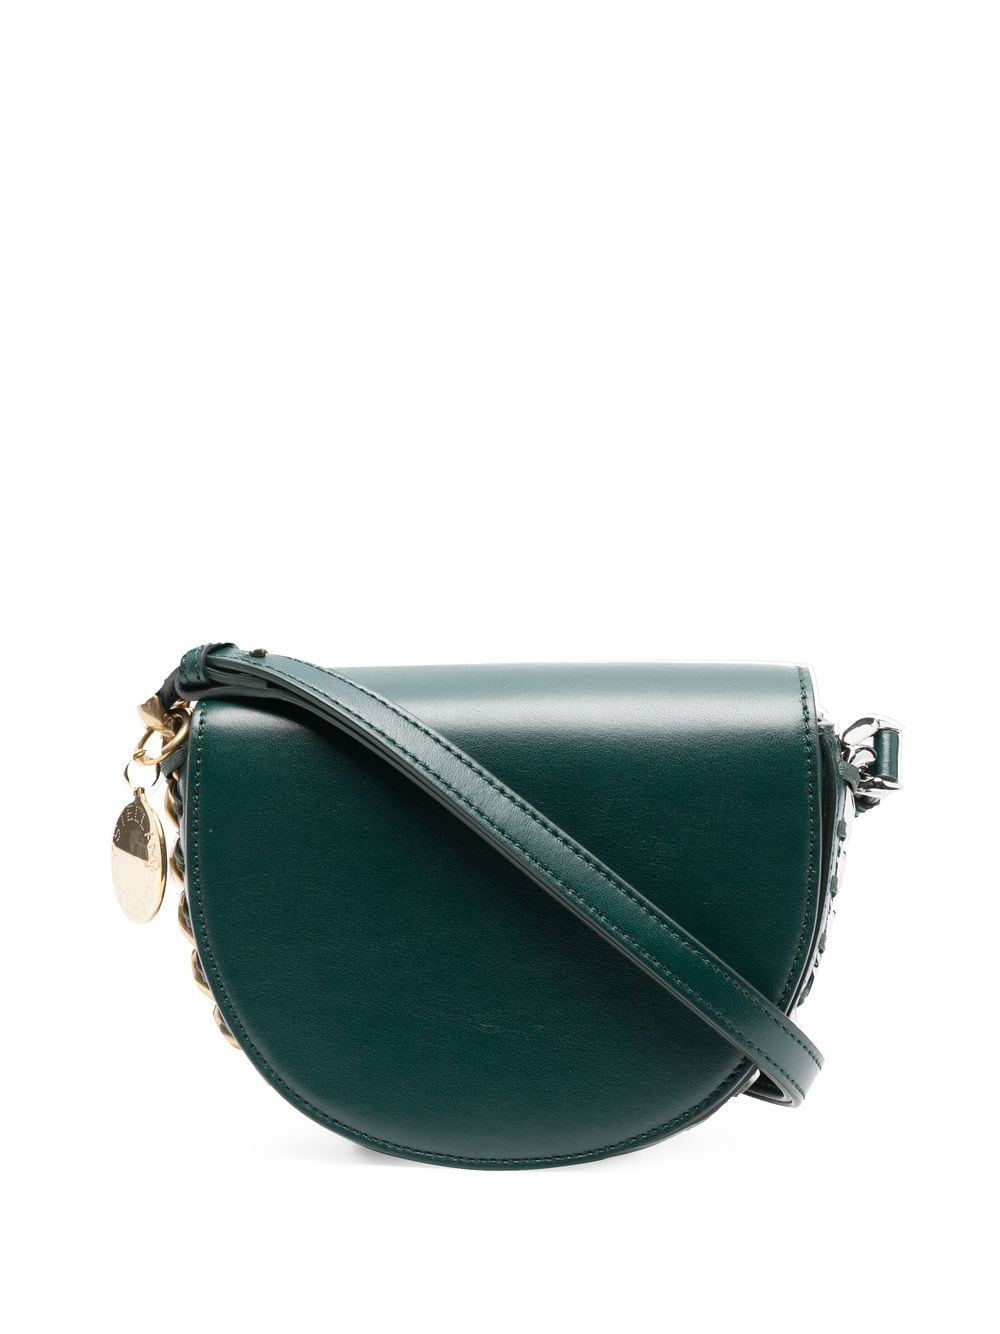 Stella McCartney Frayme shoulder bag - Green